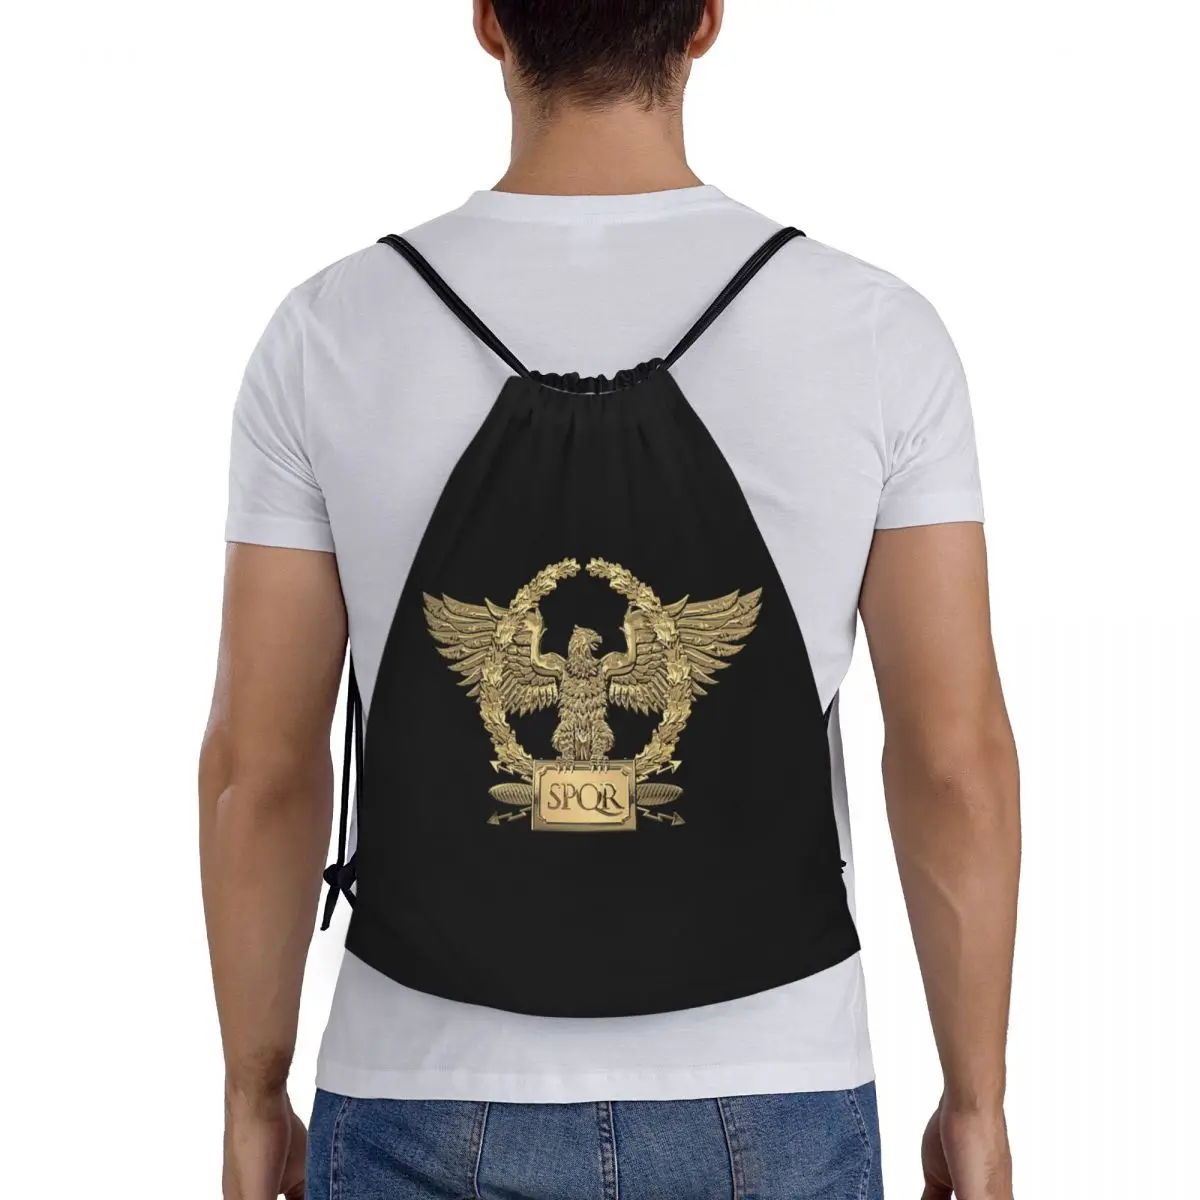 Custom Gold SPQR Roman Imperial Eagle húzózsinóros hátizsák táskák Női férfi könnyű edzőtermi sport zsákzsákok utazáshoz